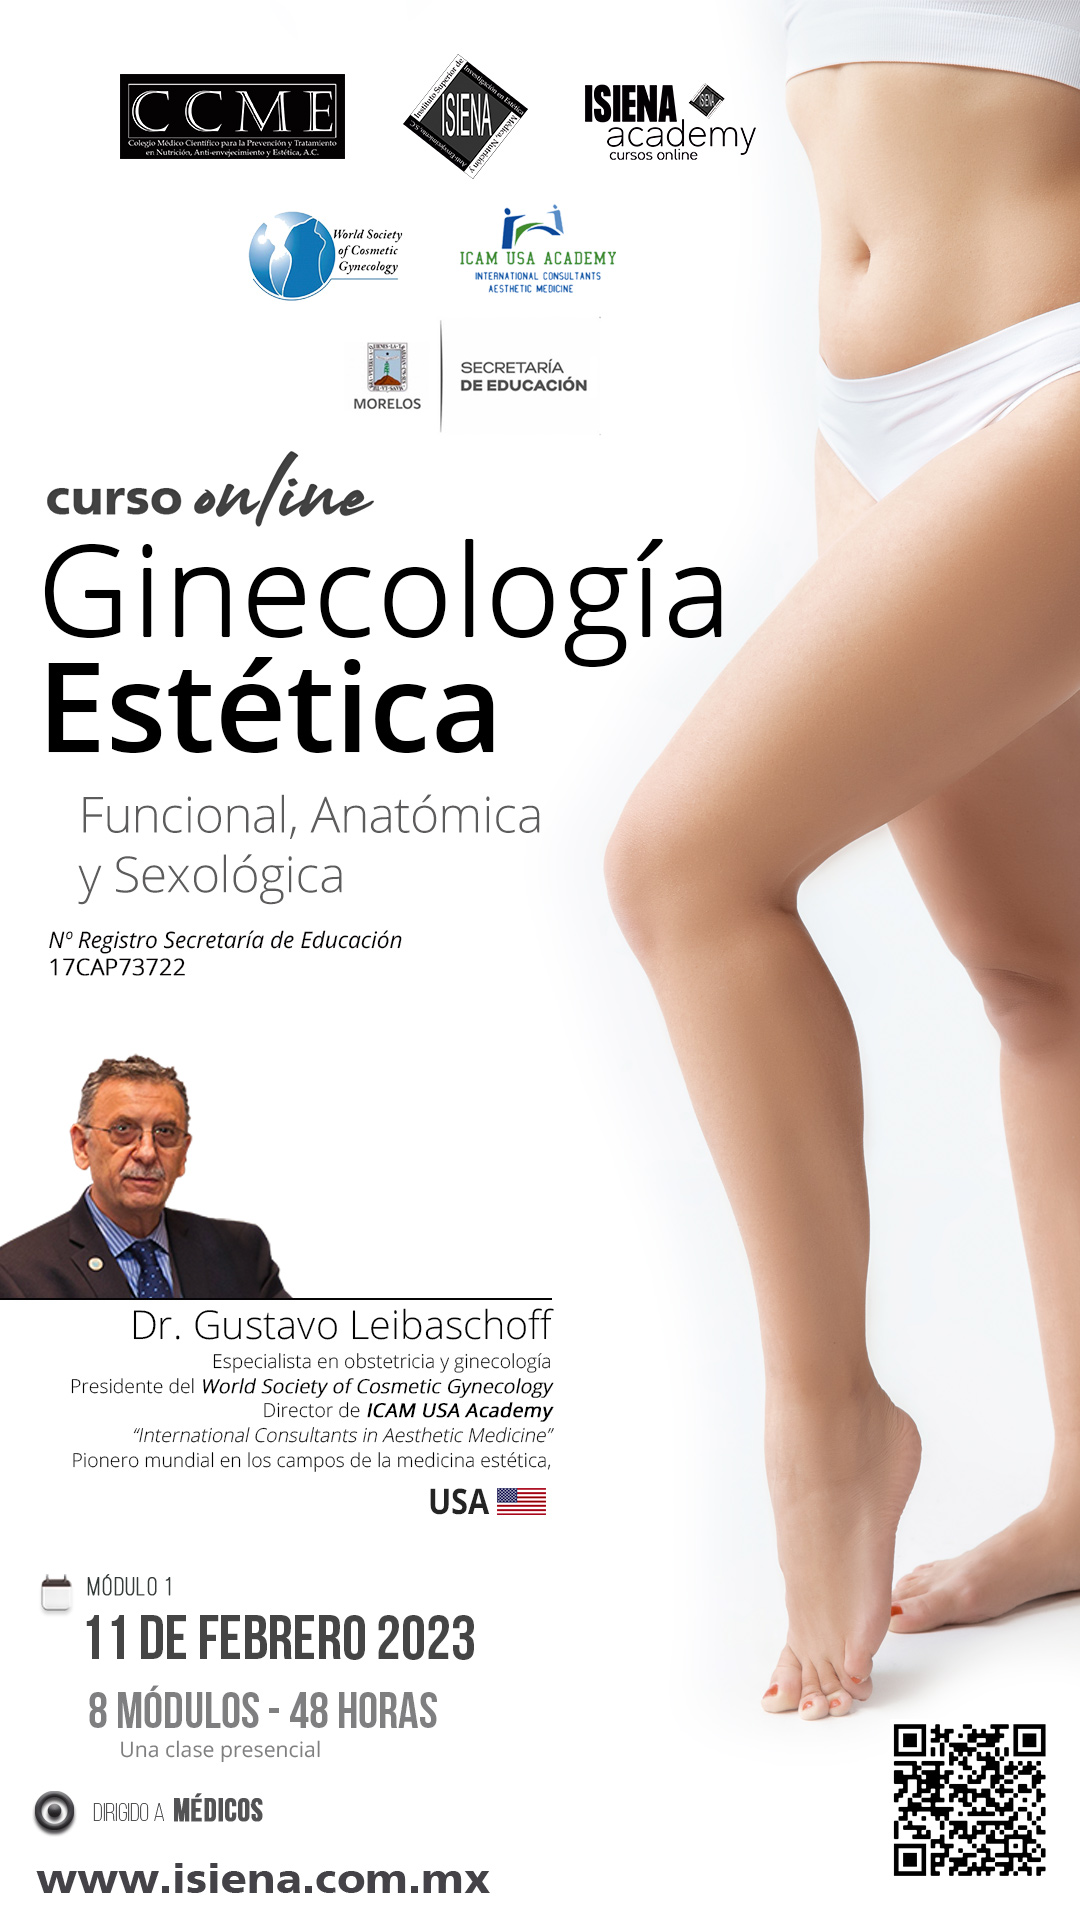 Ginecología Estetica Funcional Anatómica y Sexológica